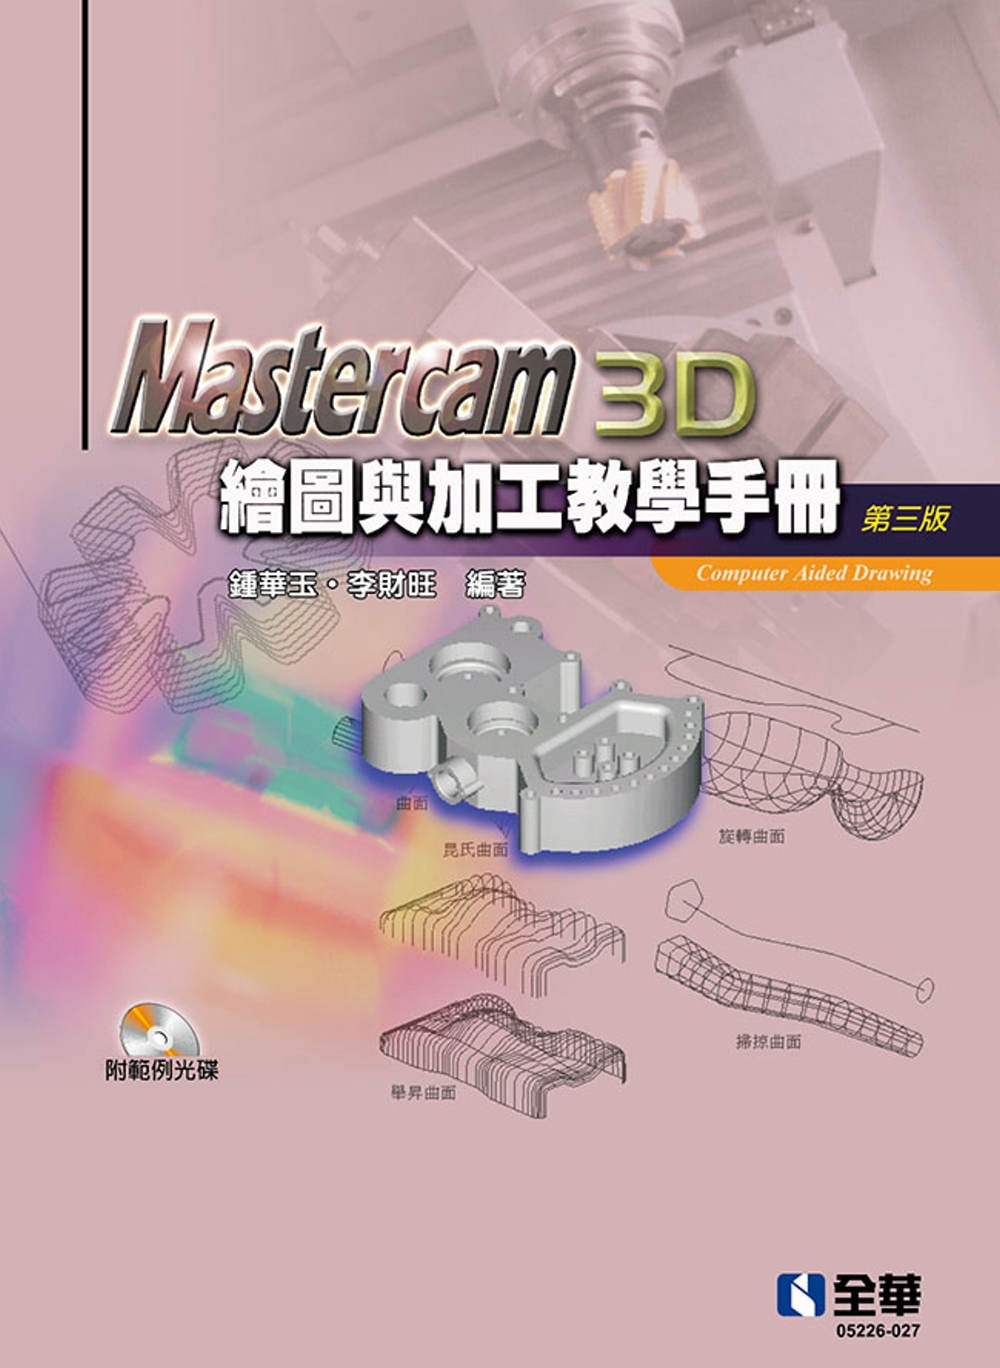 Mastercam 3D繪圖與加工教學手冊(9.1 SP2版...